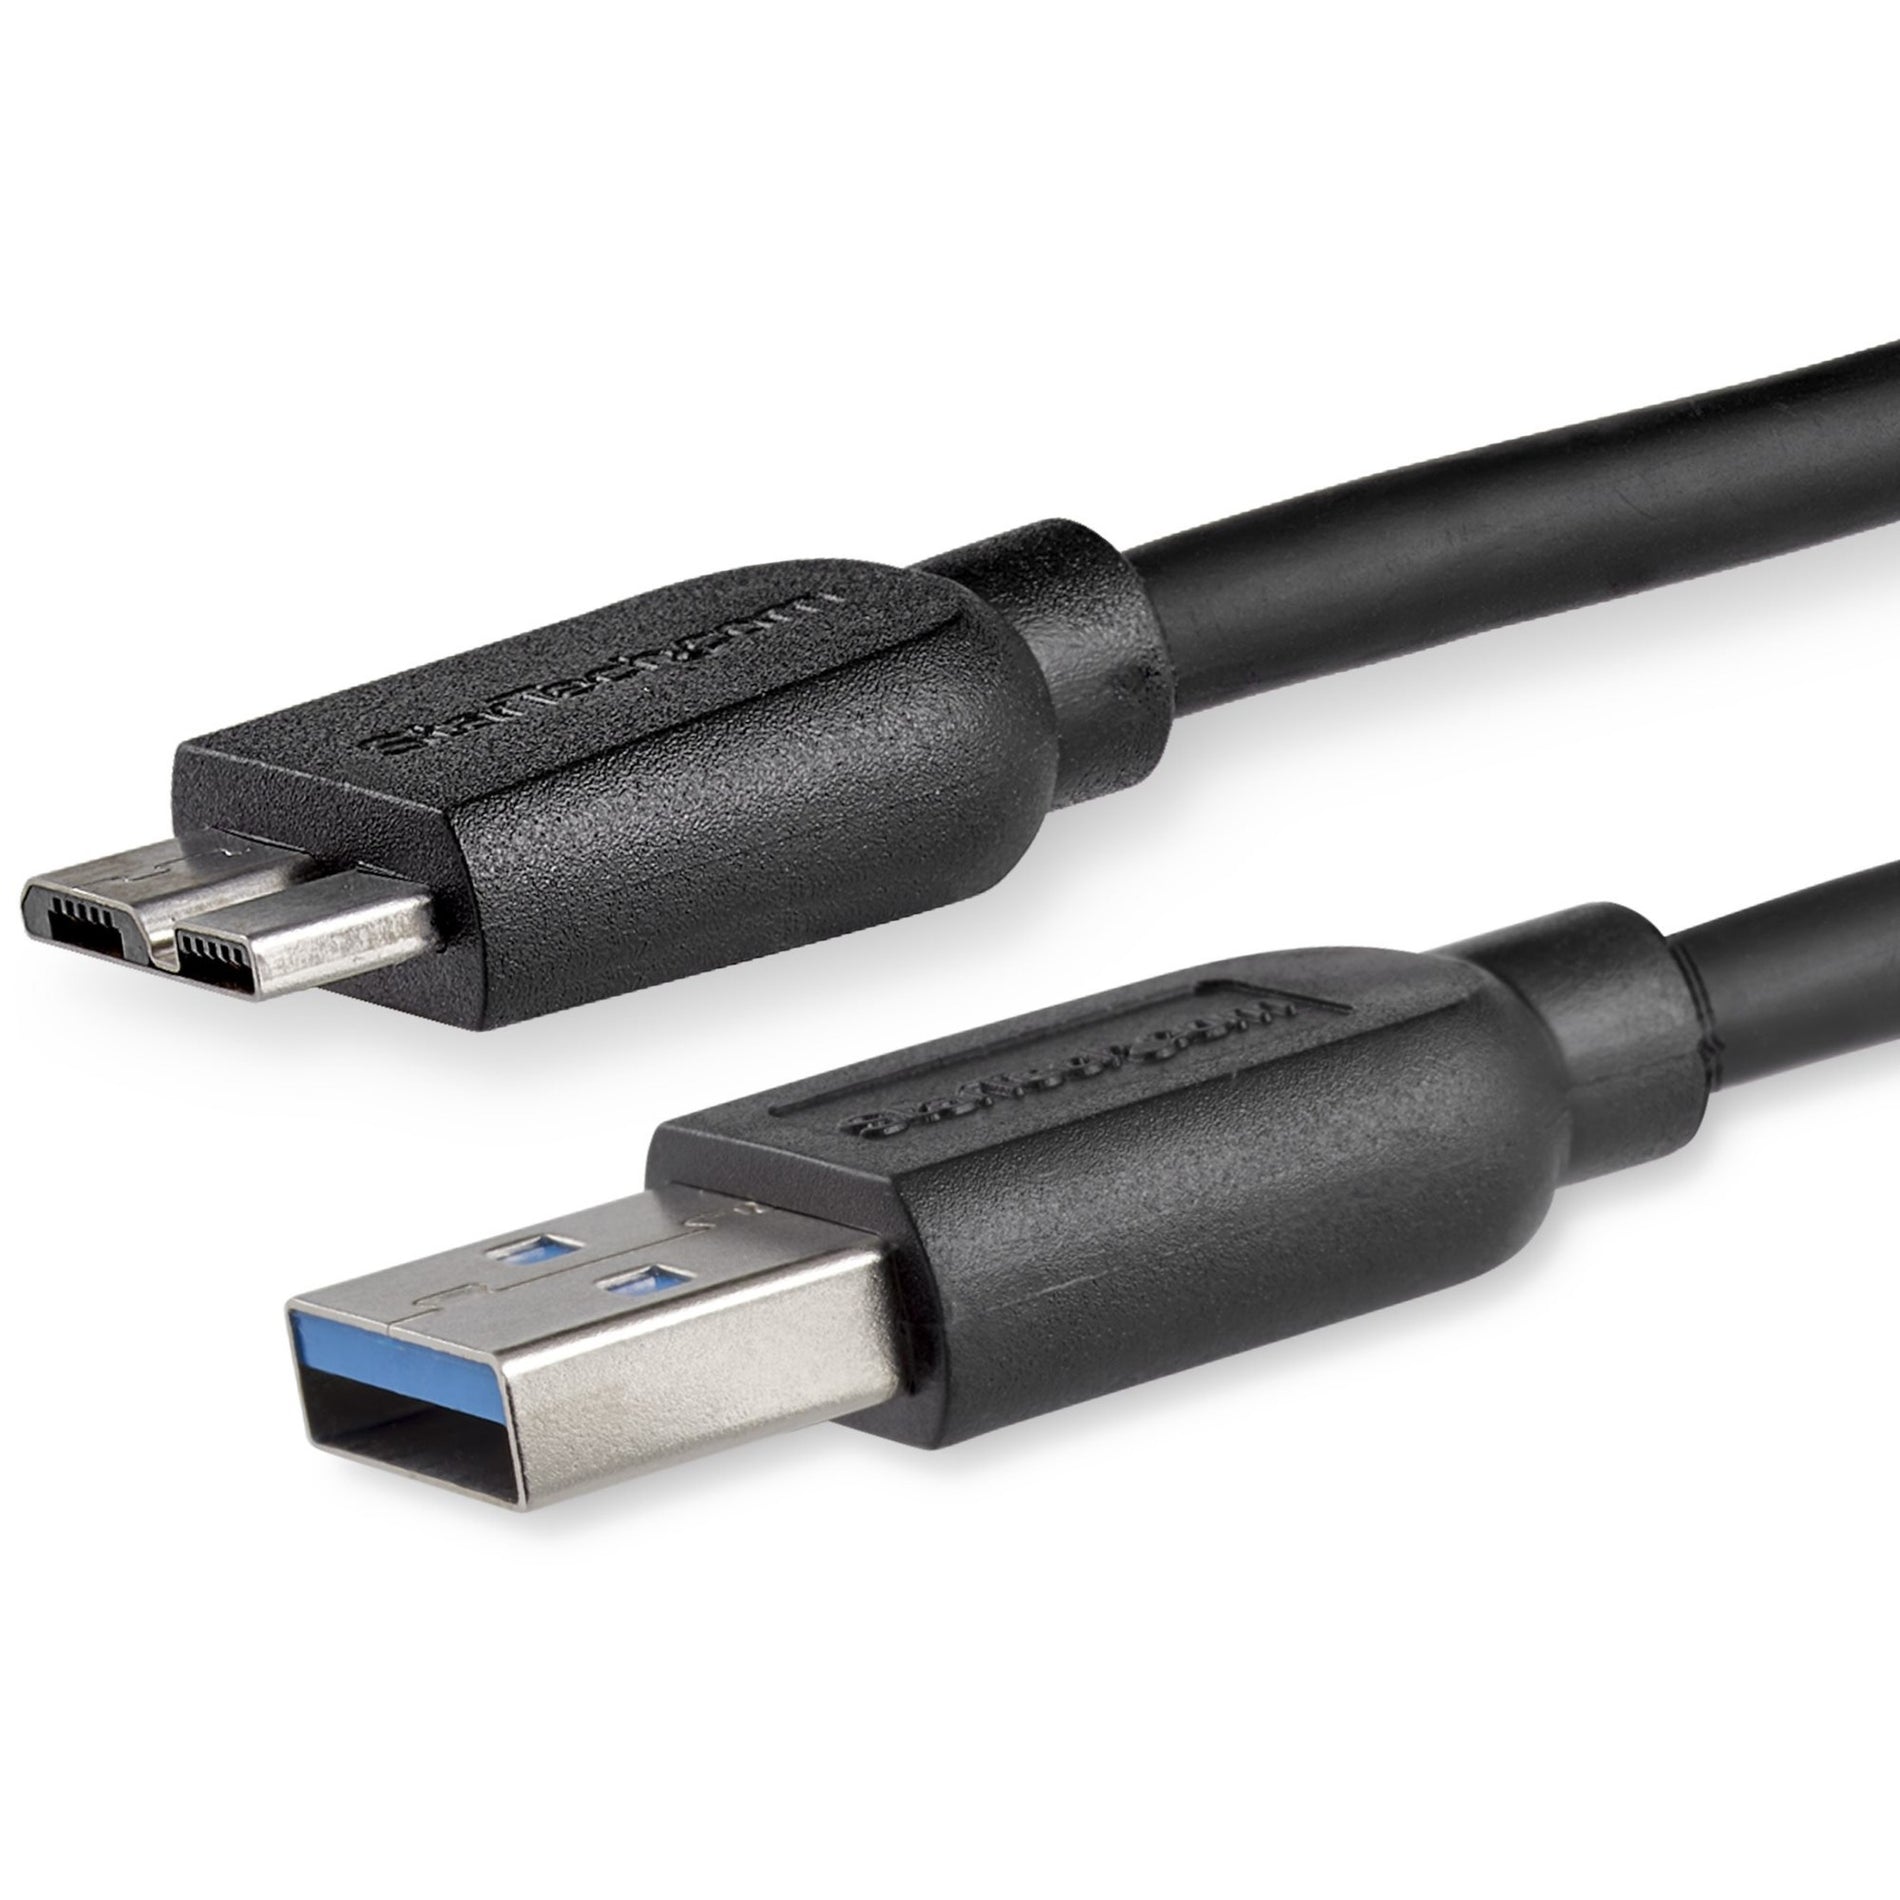 StarTech.com Câble USB3AUB2MS Slim SuperSpeed USB 3.0 A vers Micro B de 2m (6ft) - M/M Transfert de Données Rapide Souple et Durable